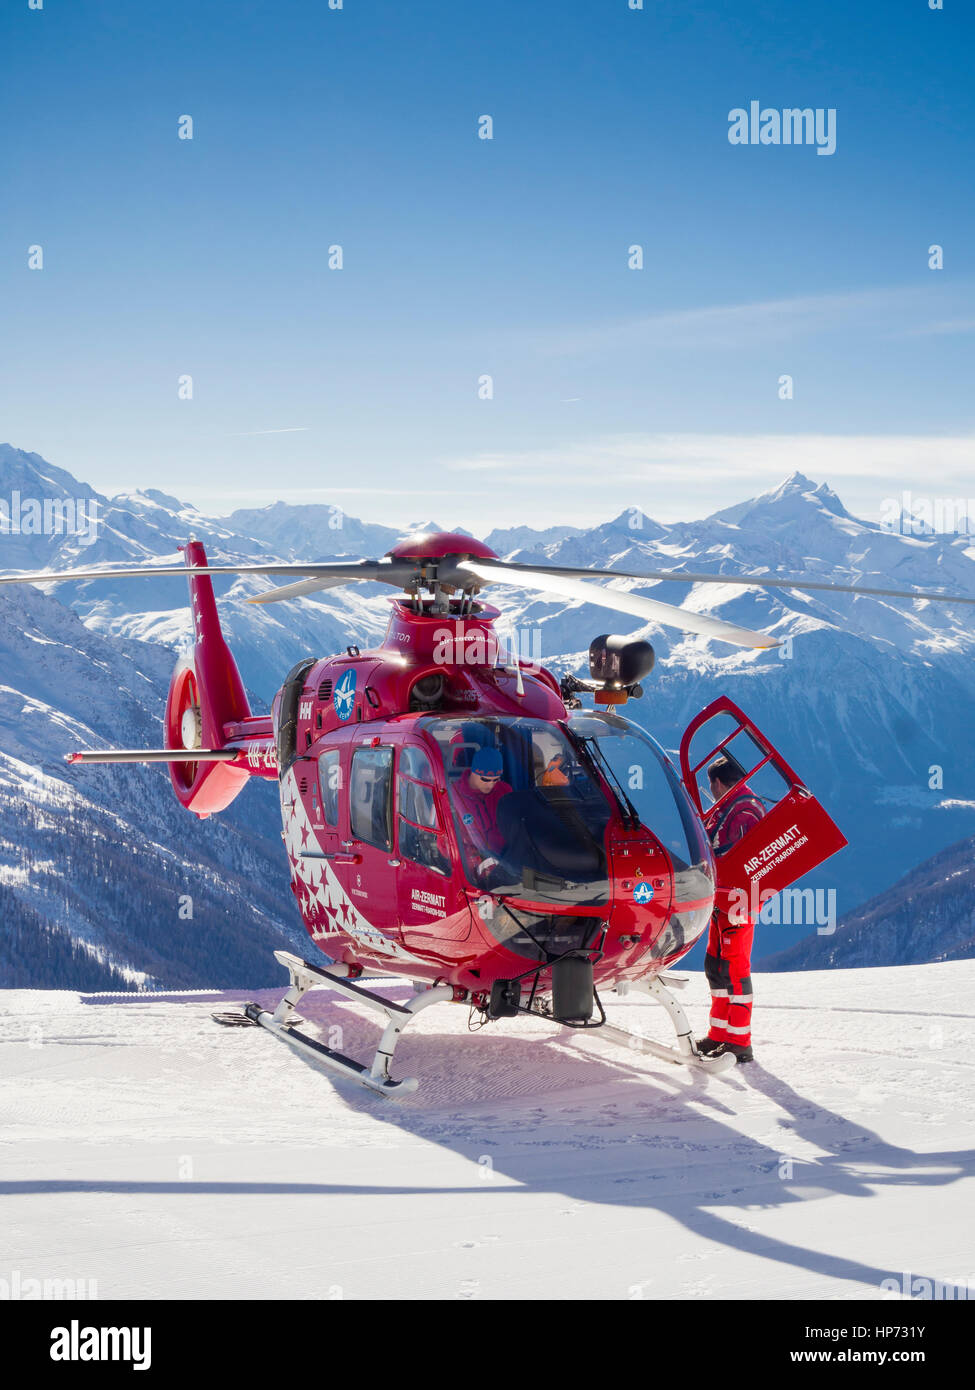 Lauchernalp, Schweiz - 13. Februar 2017: A Eurocopter EC135 Helikopter der  Schweizer "Air Zermatt" Hubschrauber Fluggesellschaft ist auf den  schneebedeckten Skipisten gelandet Stockfotografie - Alamy